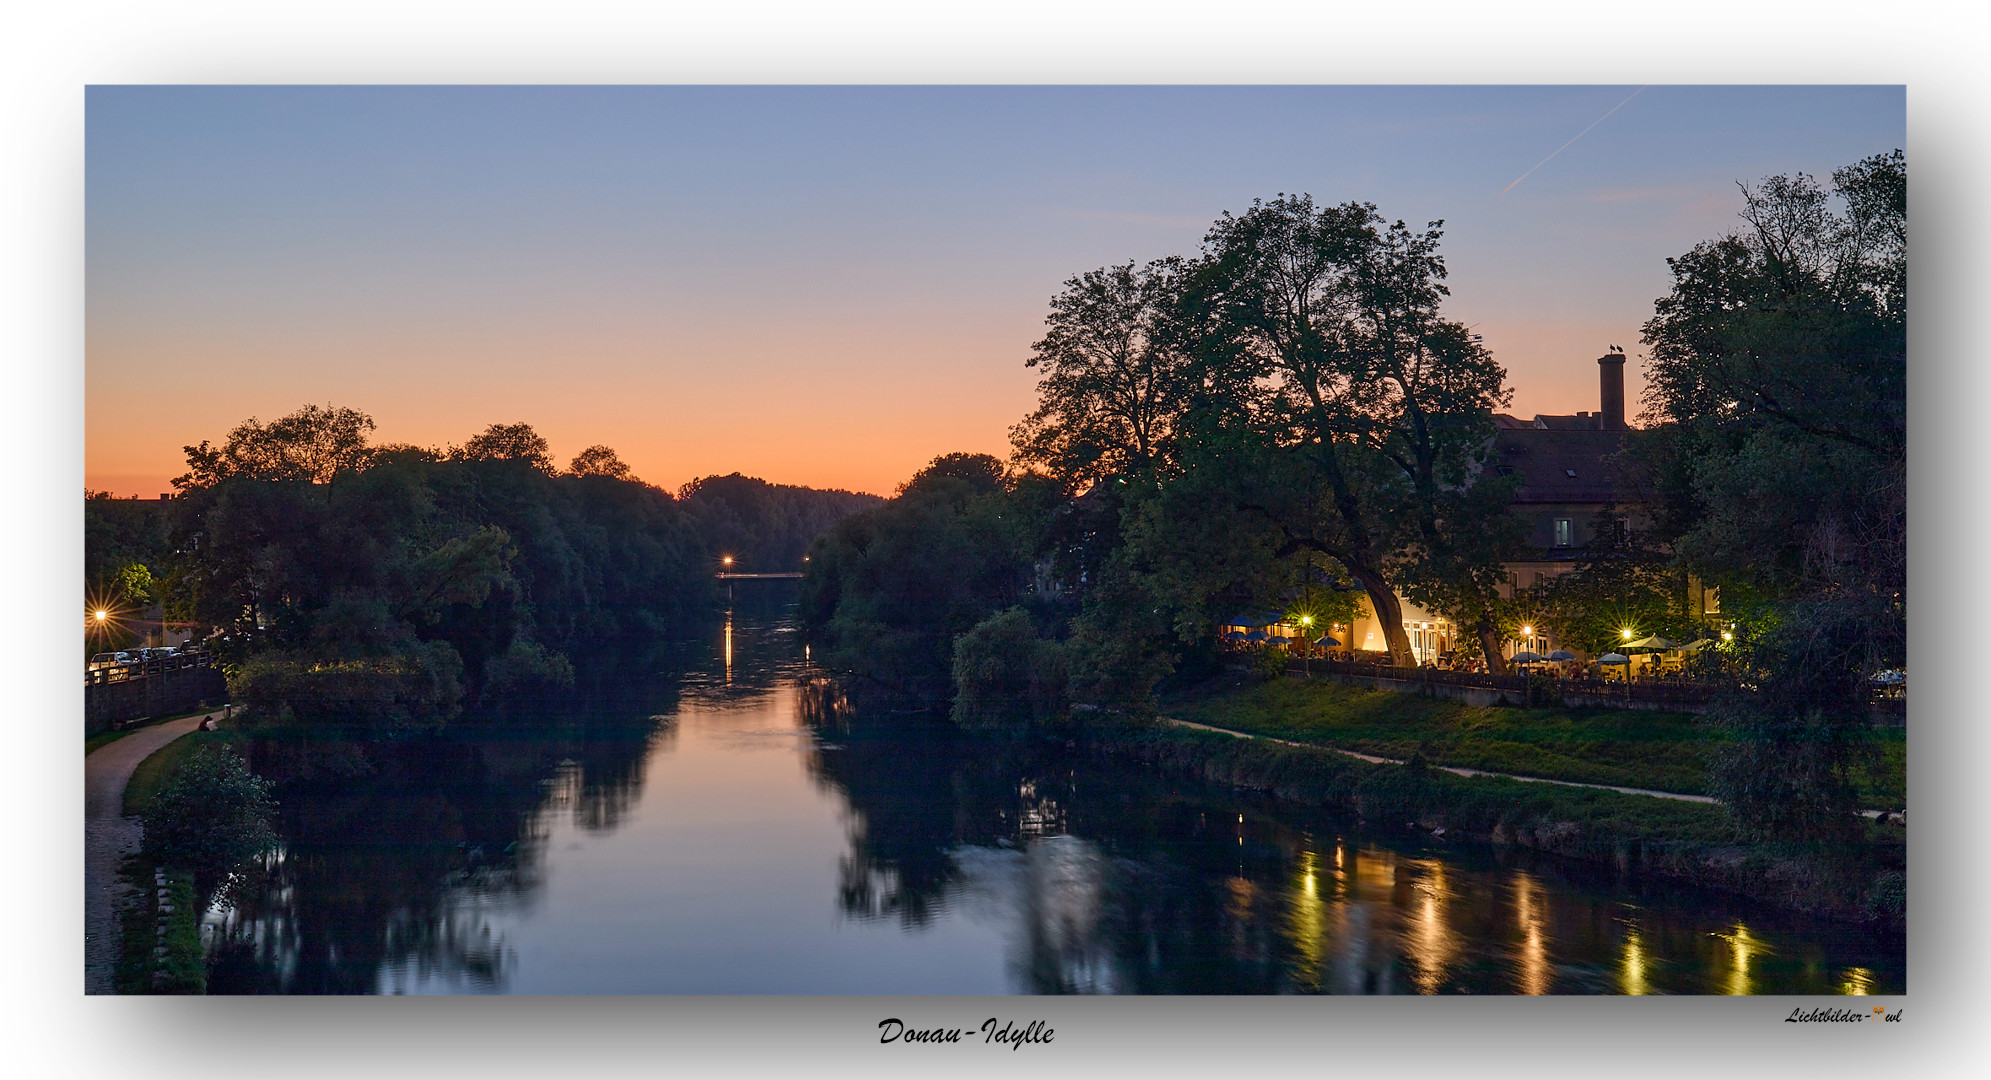 Donau-Idylle